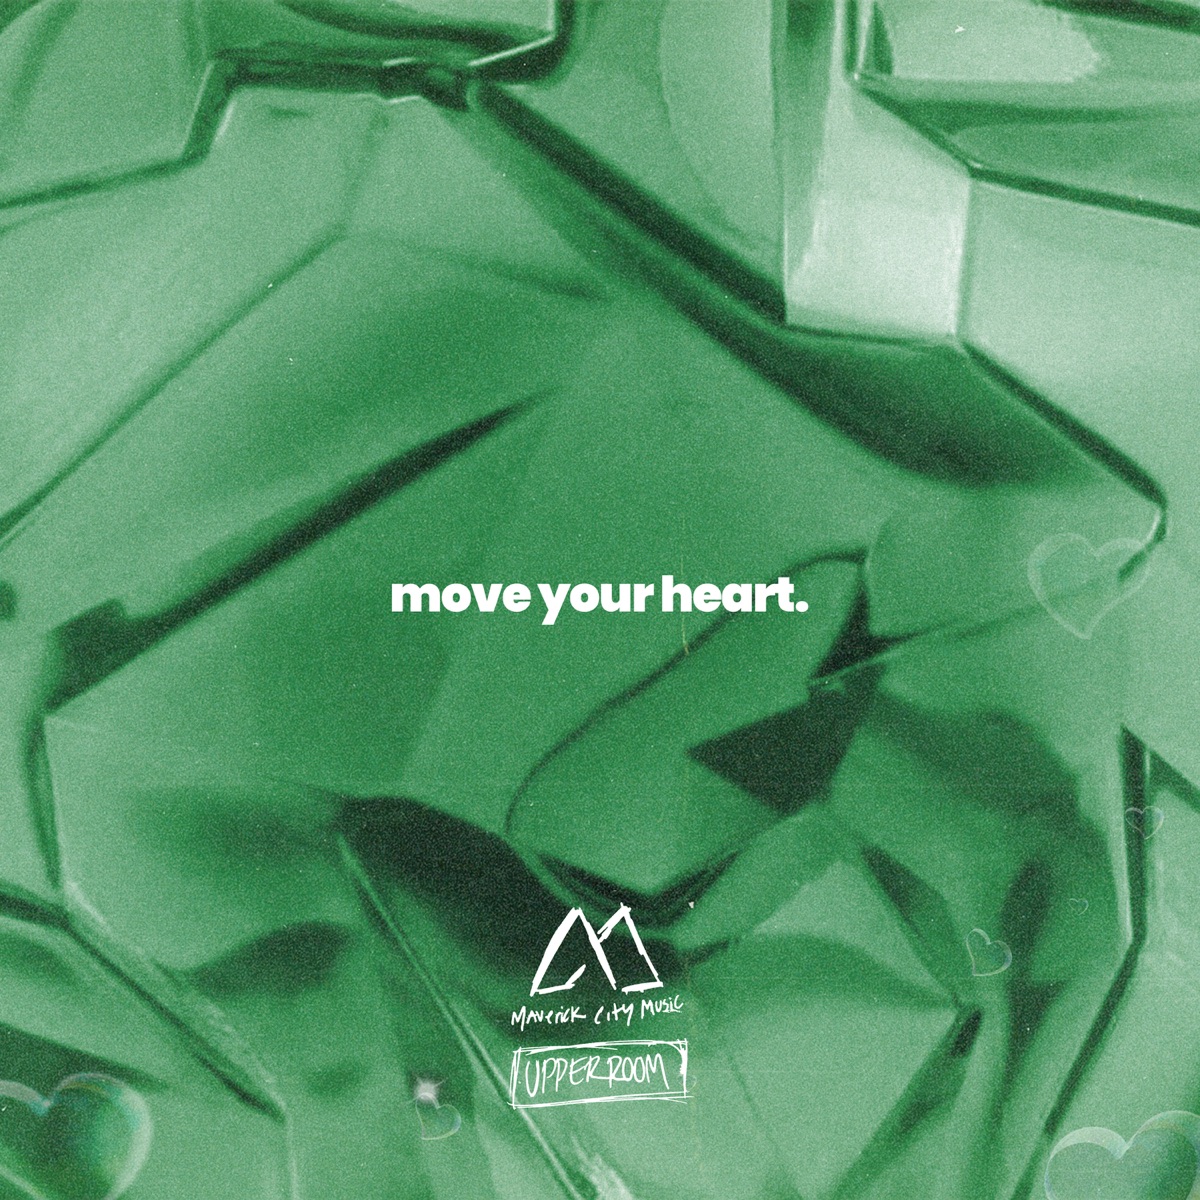 Mover o Teu Coração (Move Your Heart - Maverick City Music, UPPERROOM) 